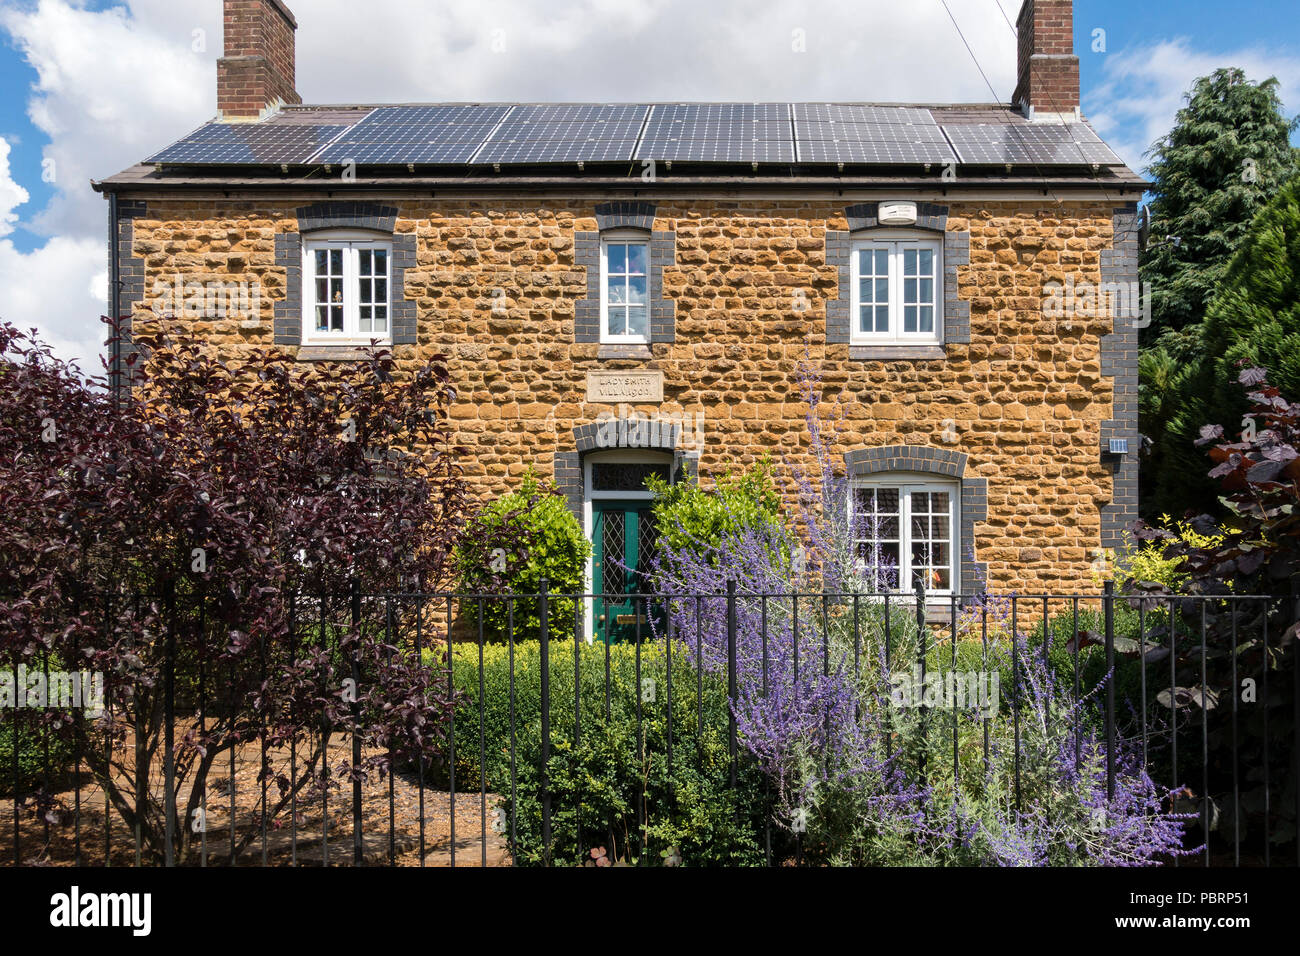 Front elevation, Ladysmith, Villa, vieille brique bleu et jaune maison construite en pierre avec des panneaux solaires sur toit, C1900, Somerby, Leicestershire, England, UK Banque D'Images